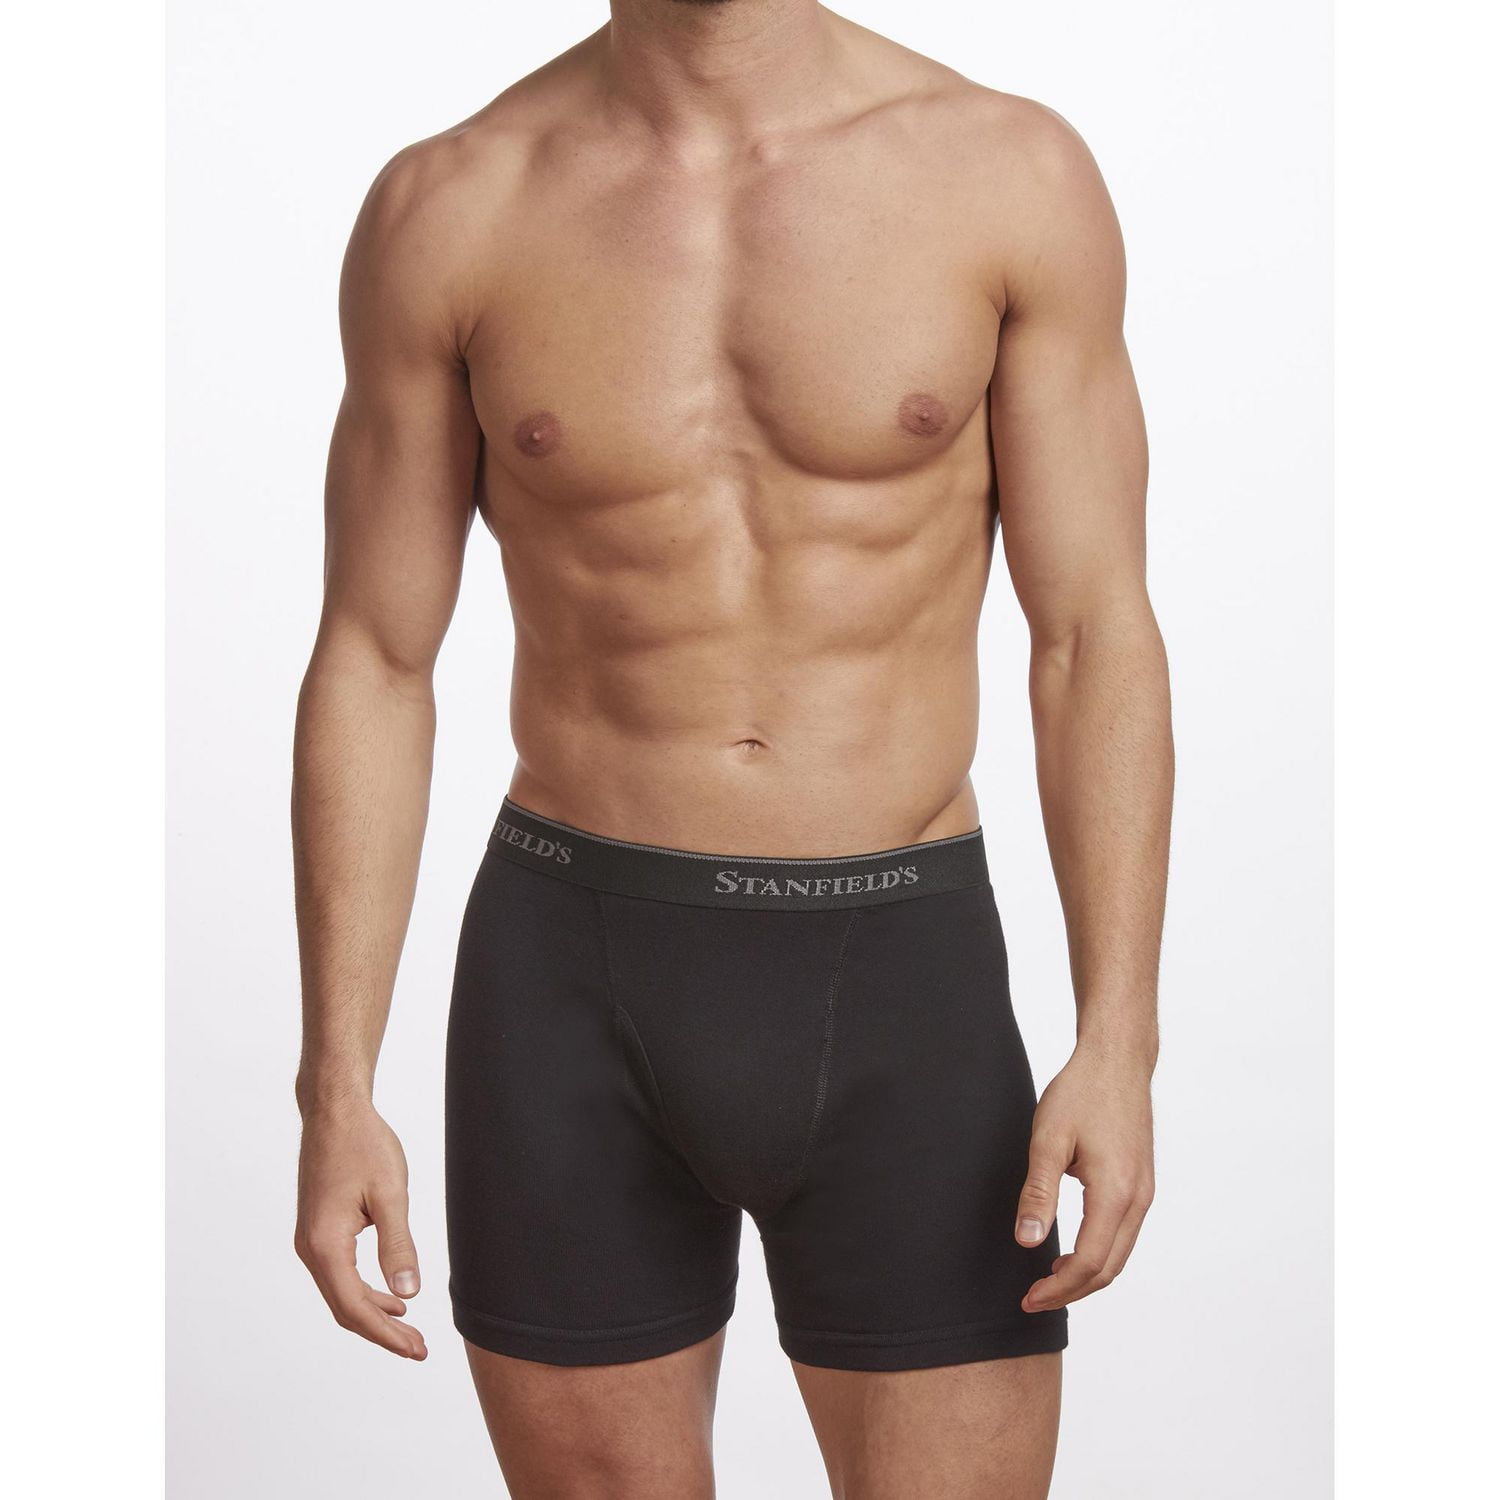 Stanfield's Men's Premium 100% Cotton Boxer Brief Underwear - 2 Pack 